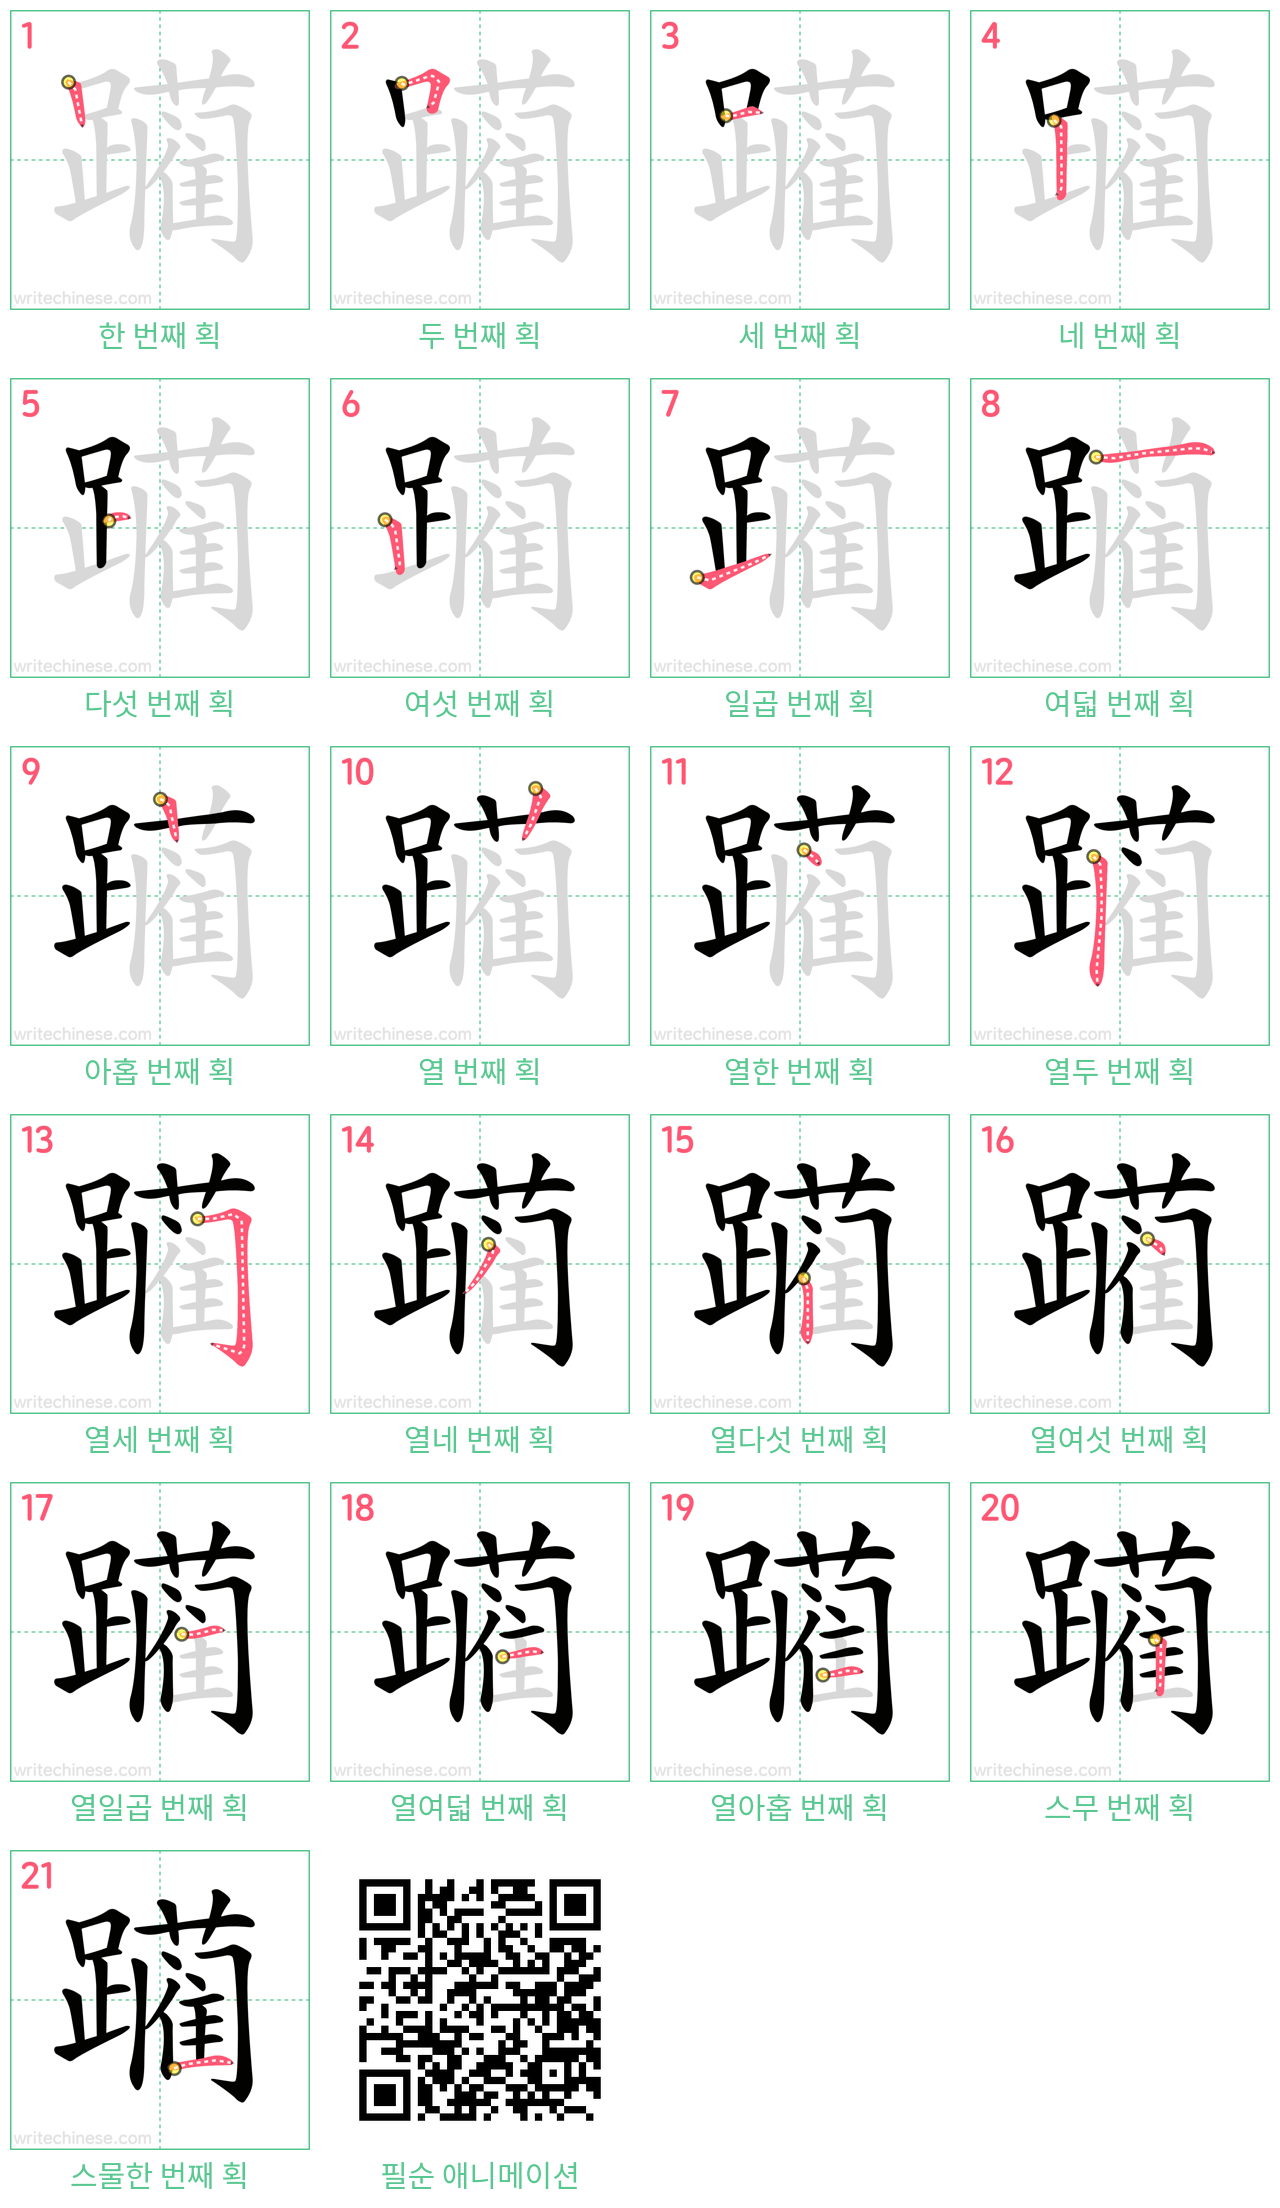 躏 step-by-step stroke order diagrams